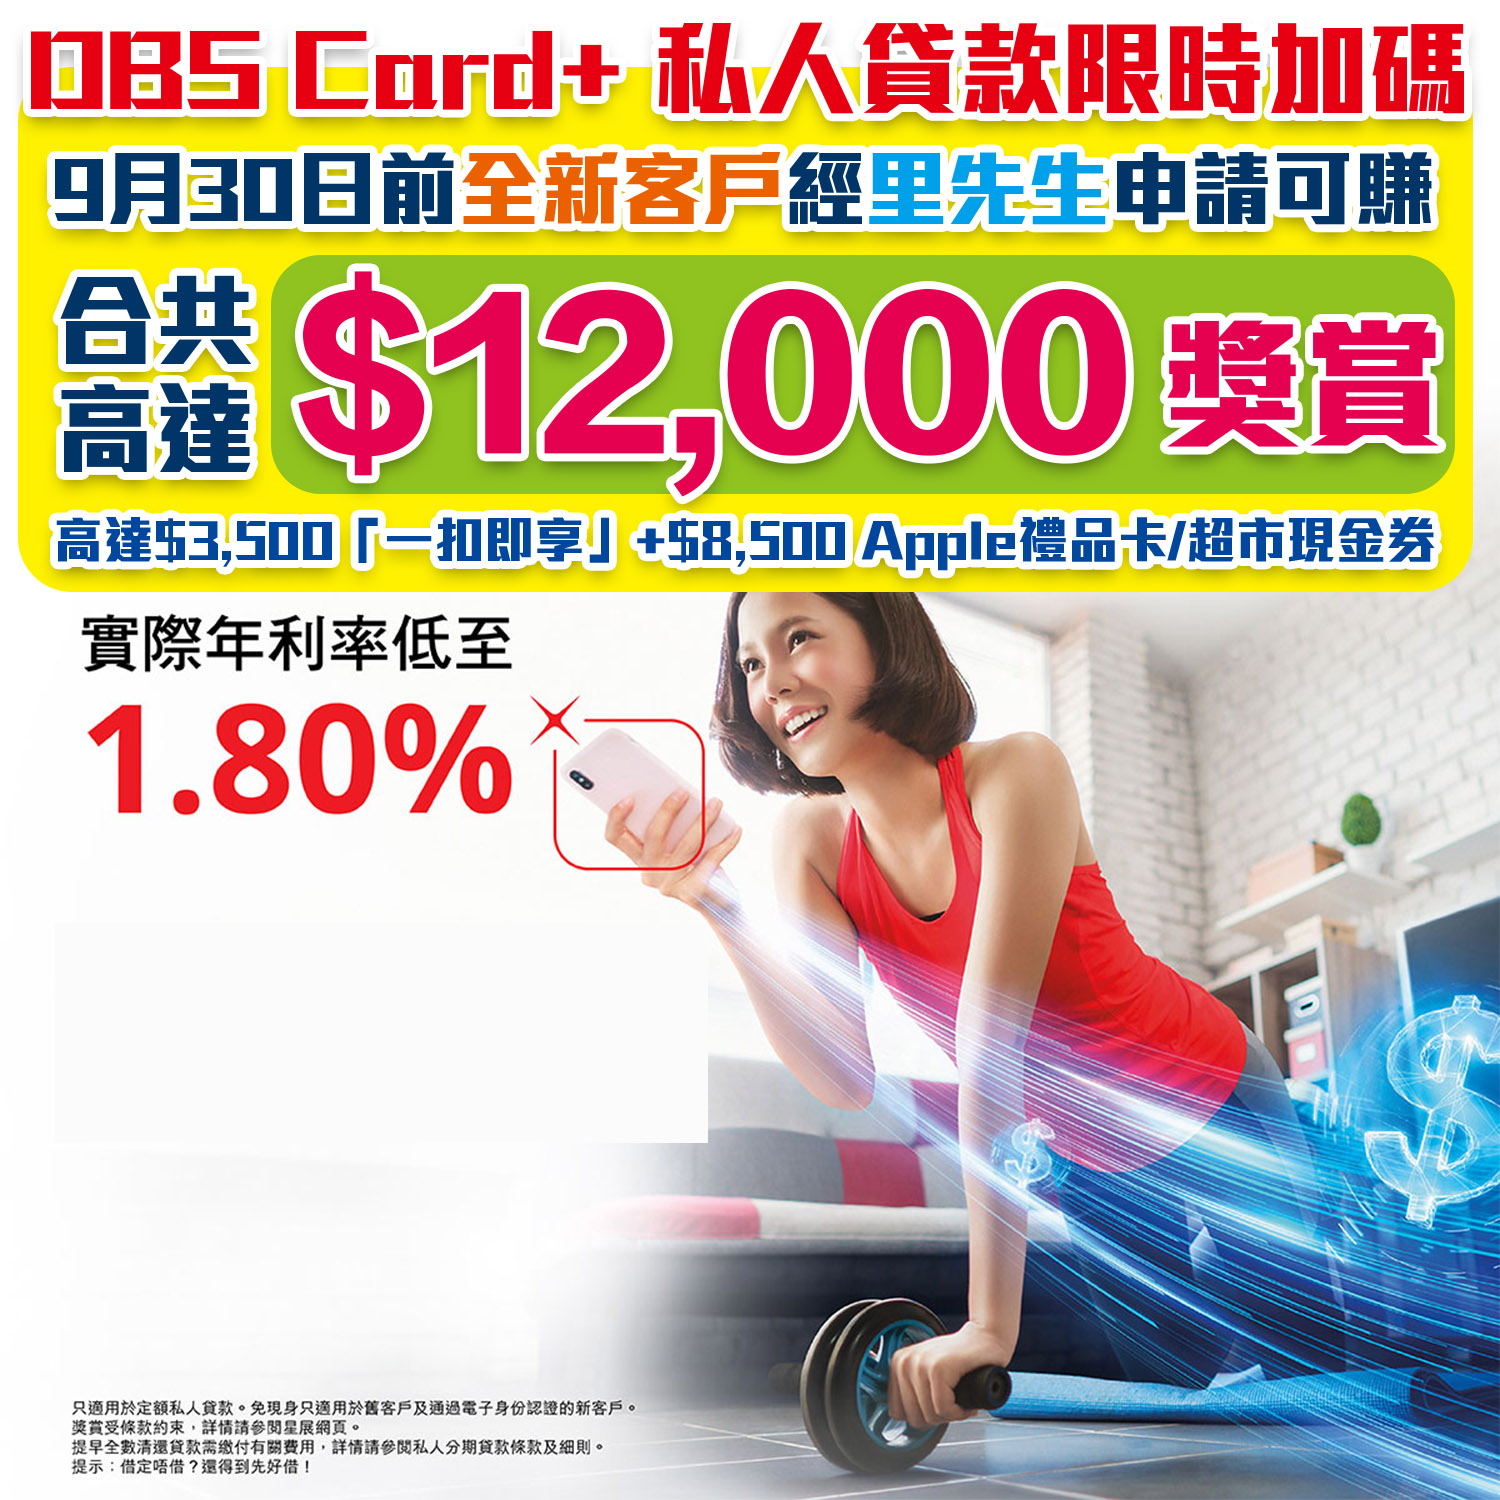 【DBS私人貸款優惠】經里先生成功申請可享高達HK$12,000回贈 實際年利率低至1.8%！新舊客戶都有優惠！